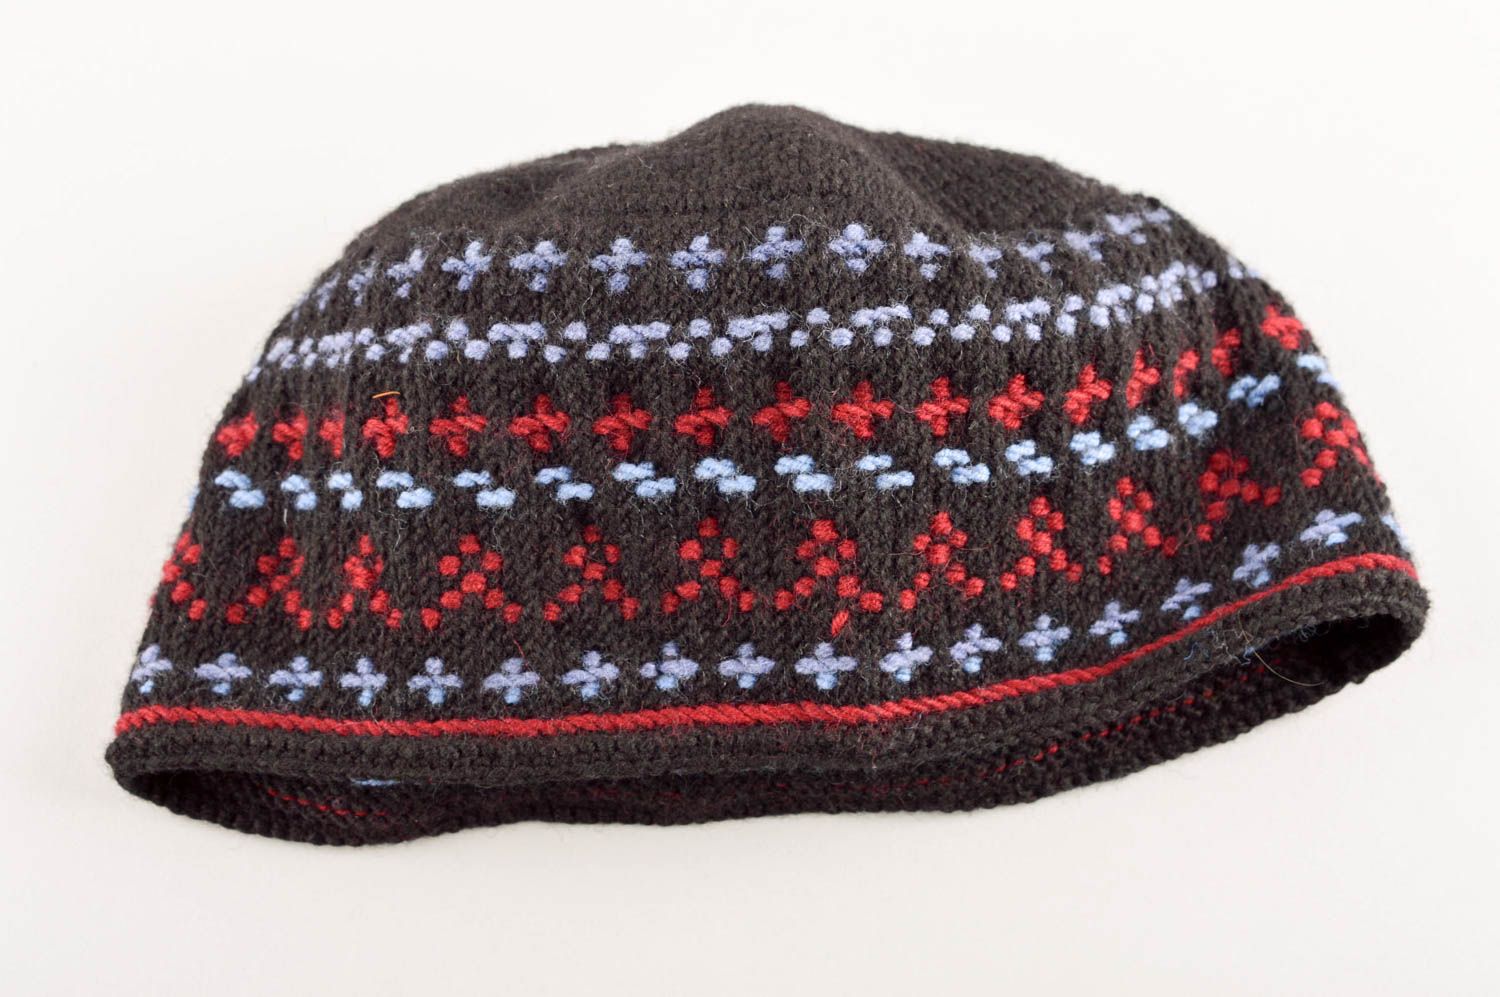 Вязаная шапка ручно работы зимняя шапка из натуральной шерсти вязаная шапочка фото 4